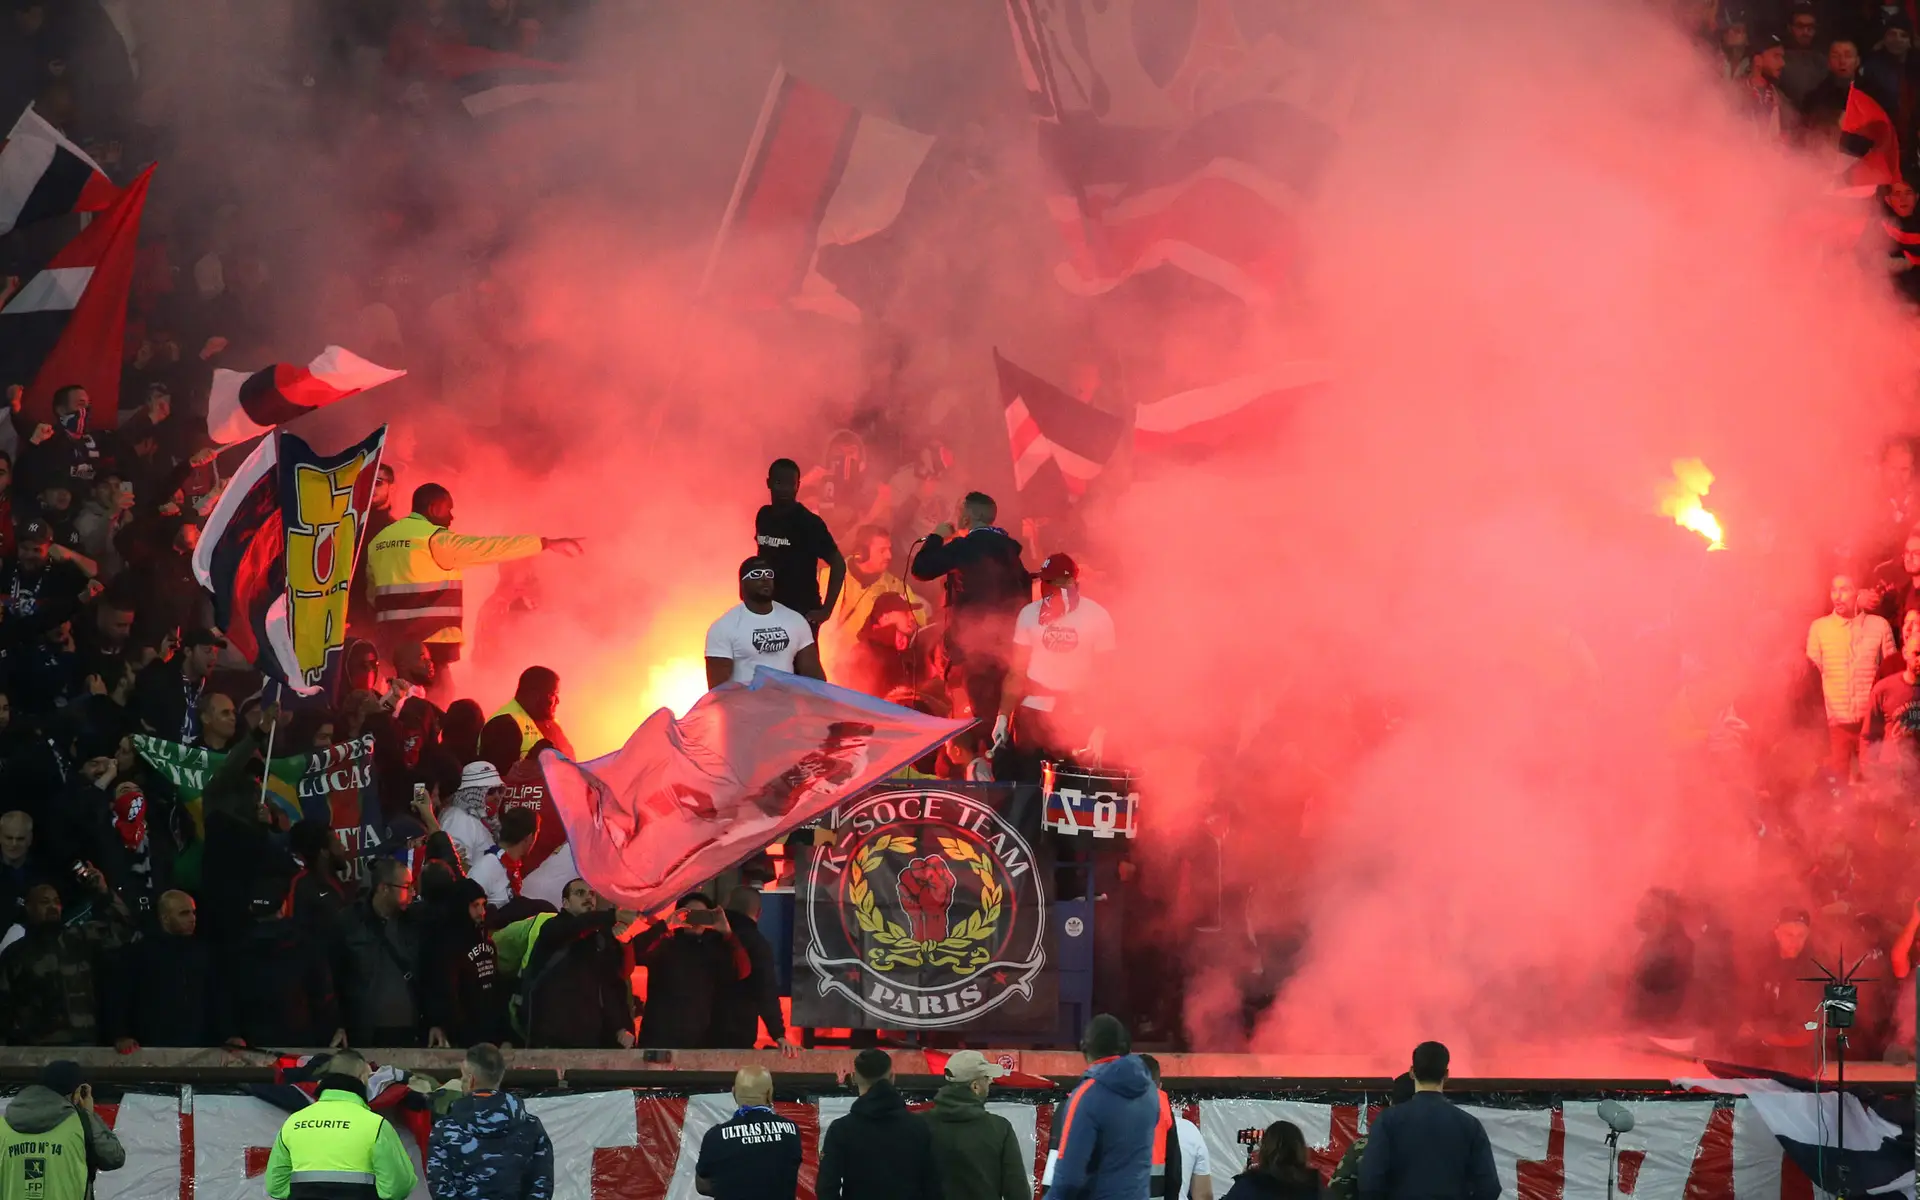 Futebol: PSG e FC Porto esmagam adversários na jornada inaugural